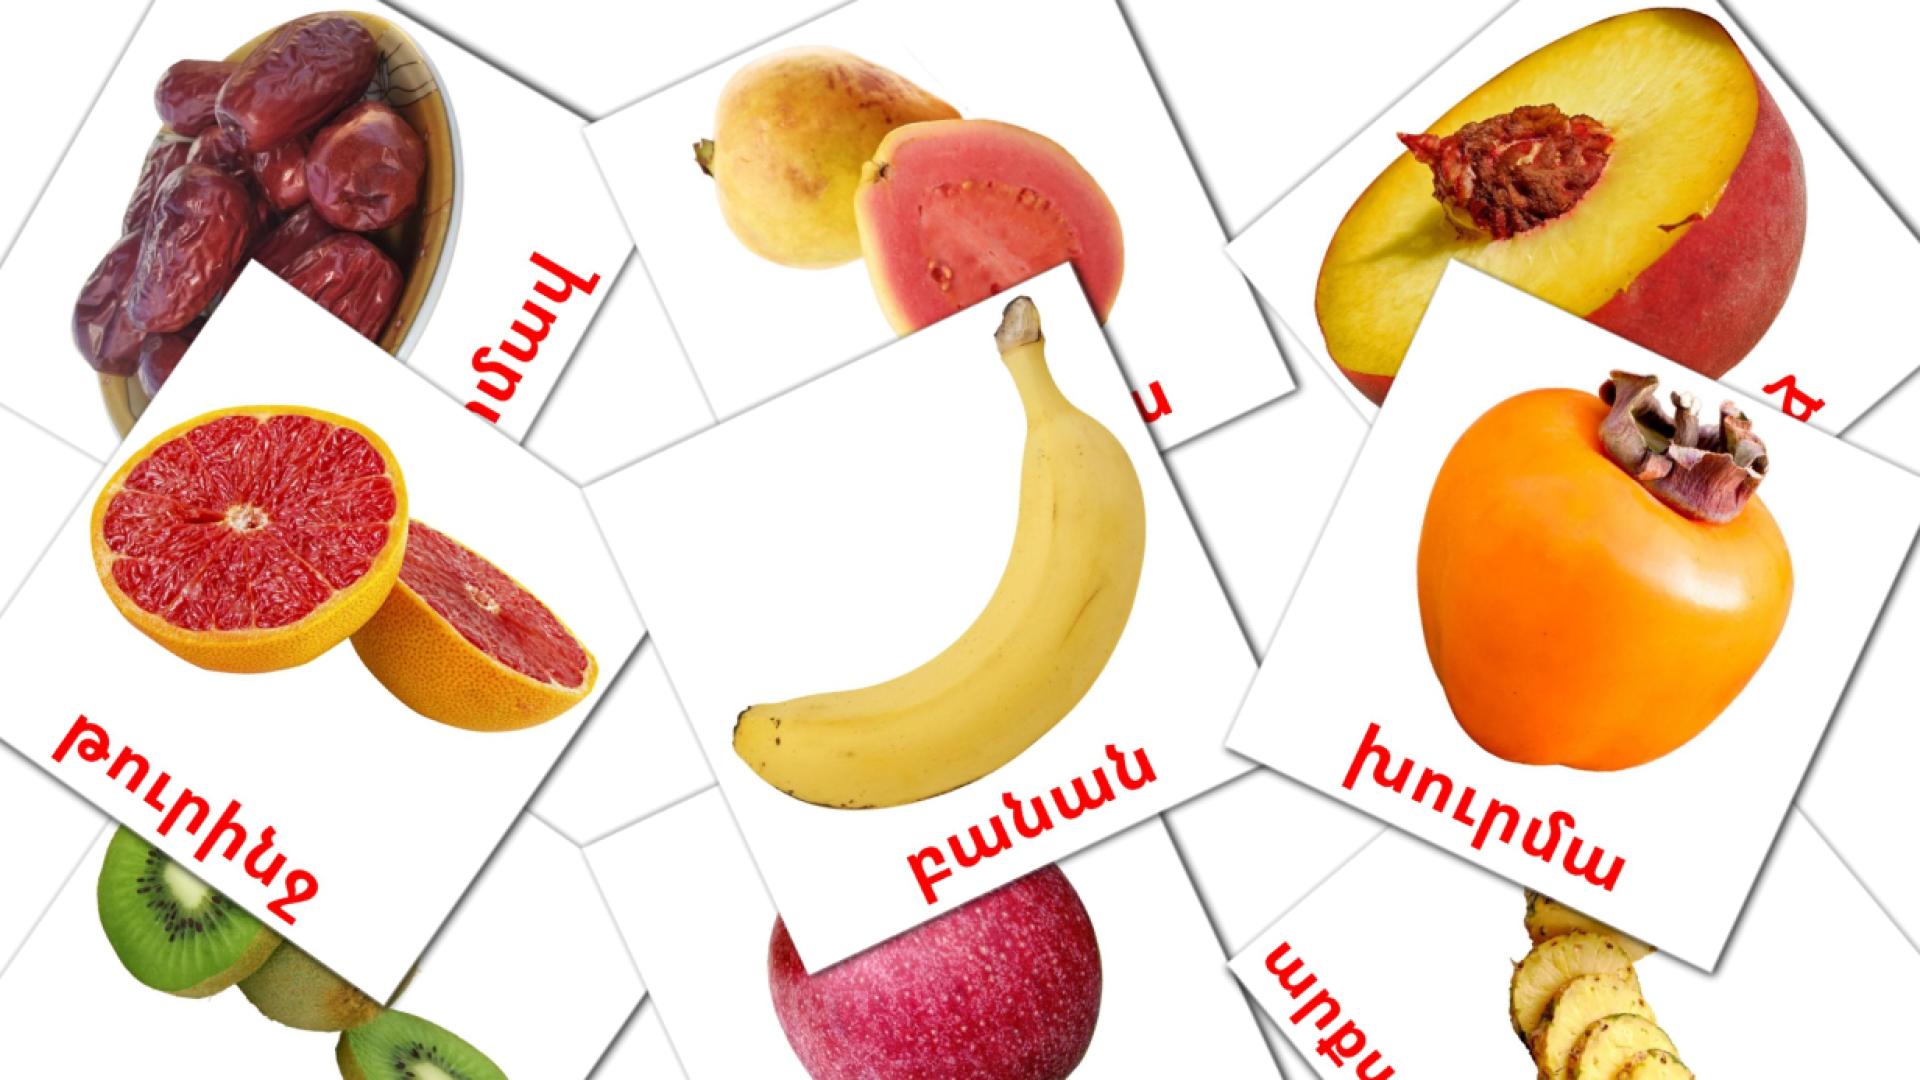 Fruit  - armeensee woordenschatkaarten